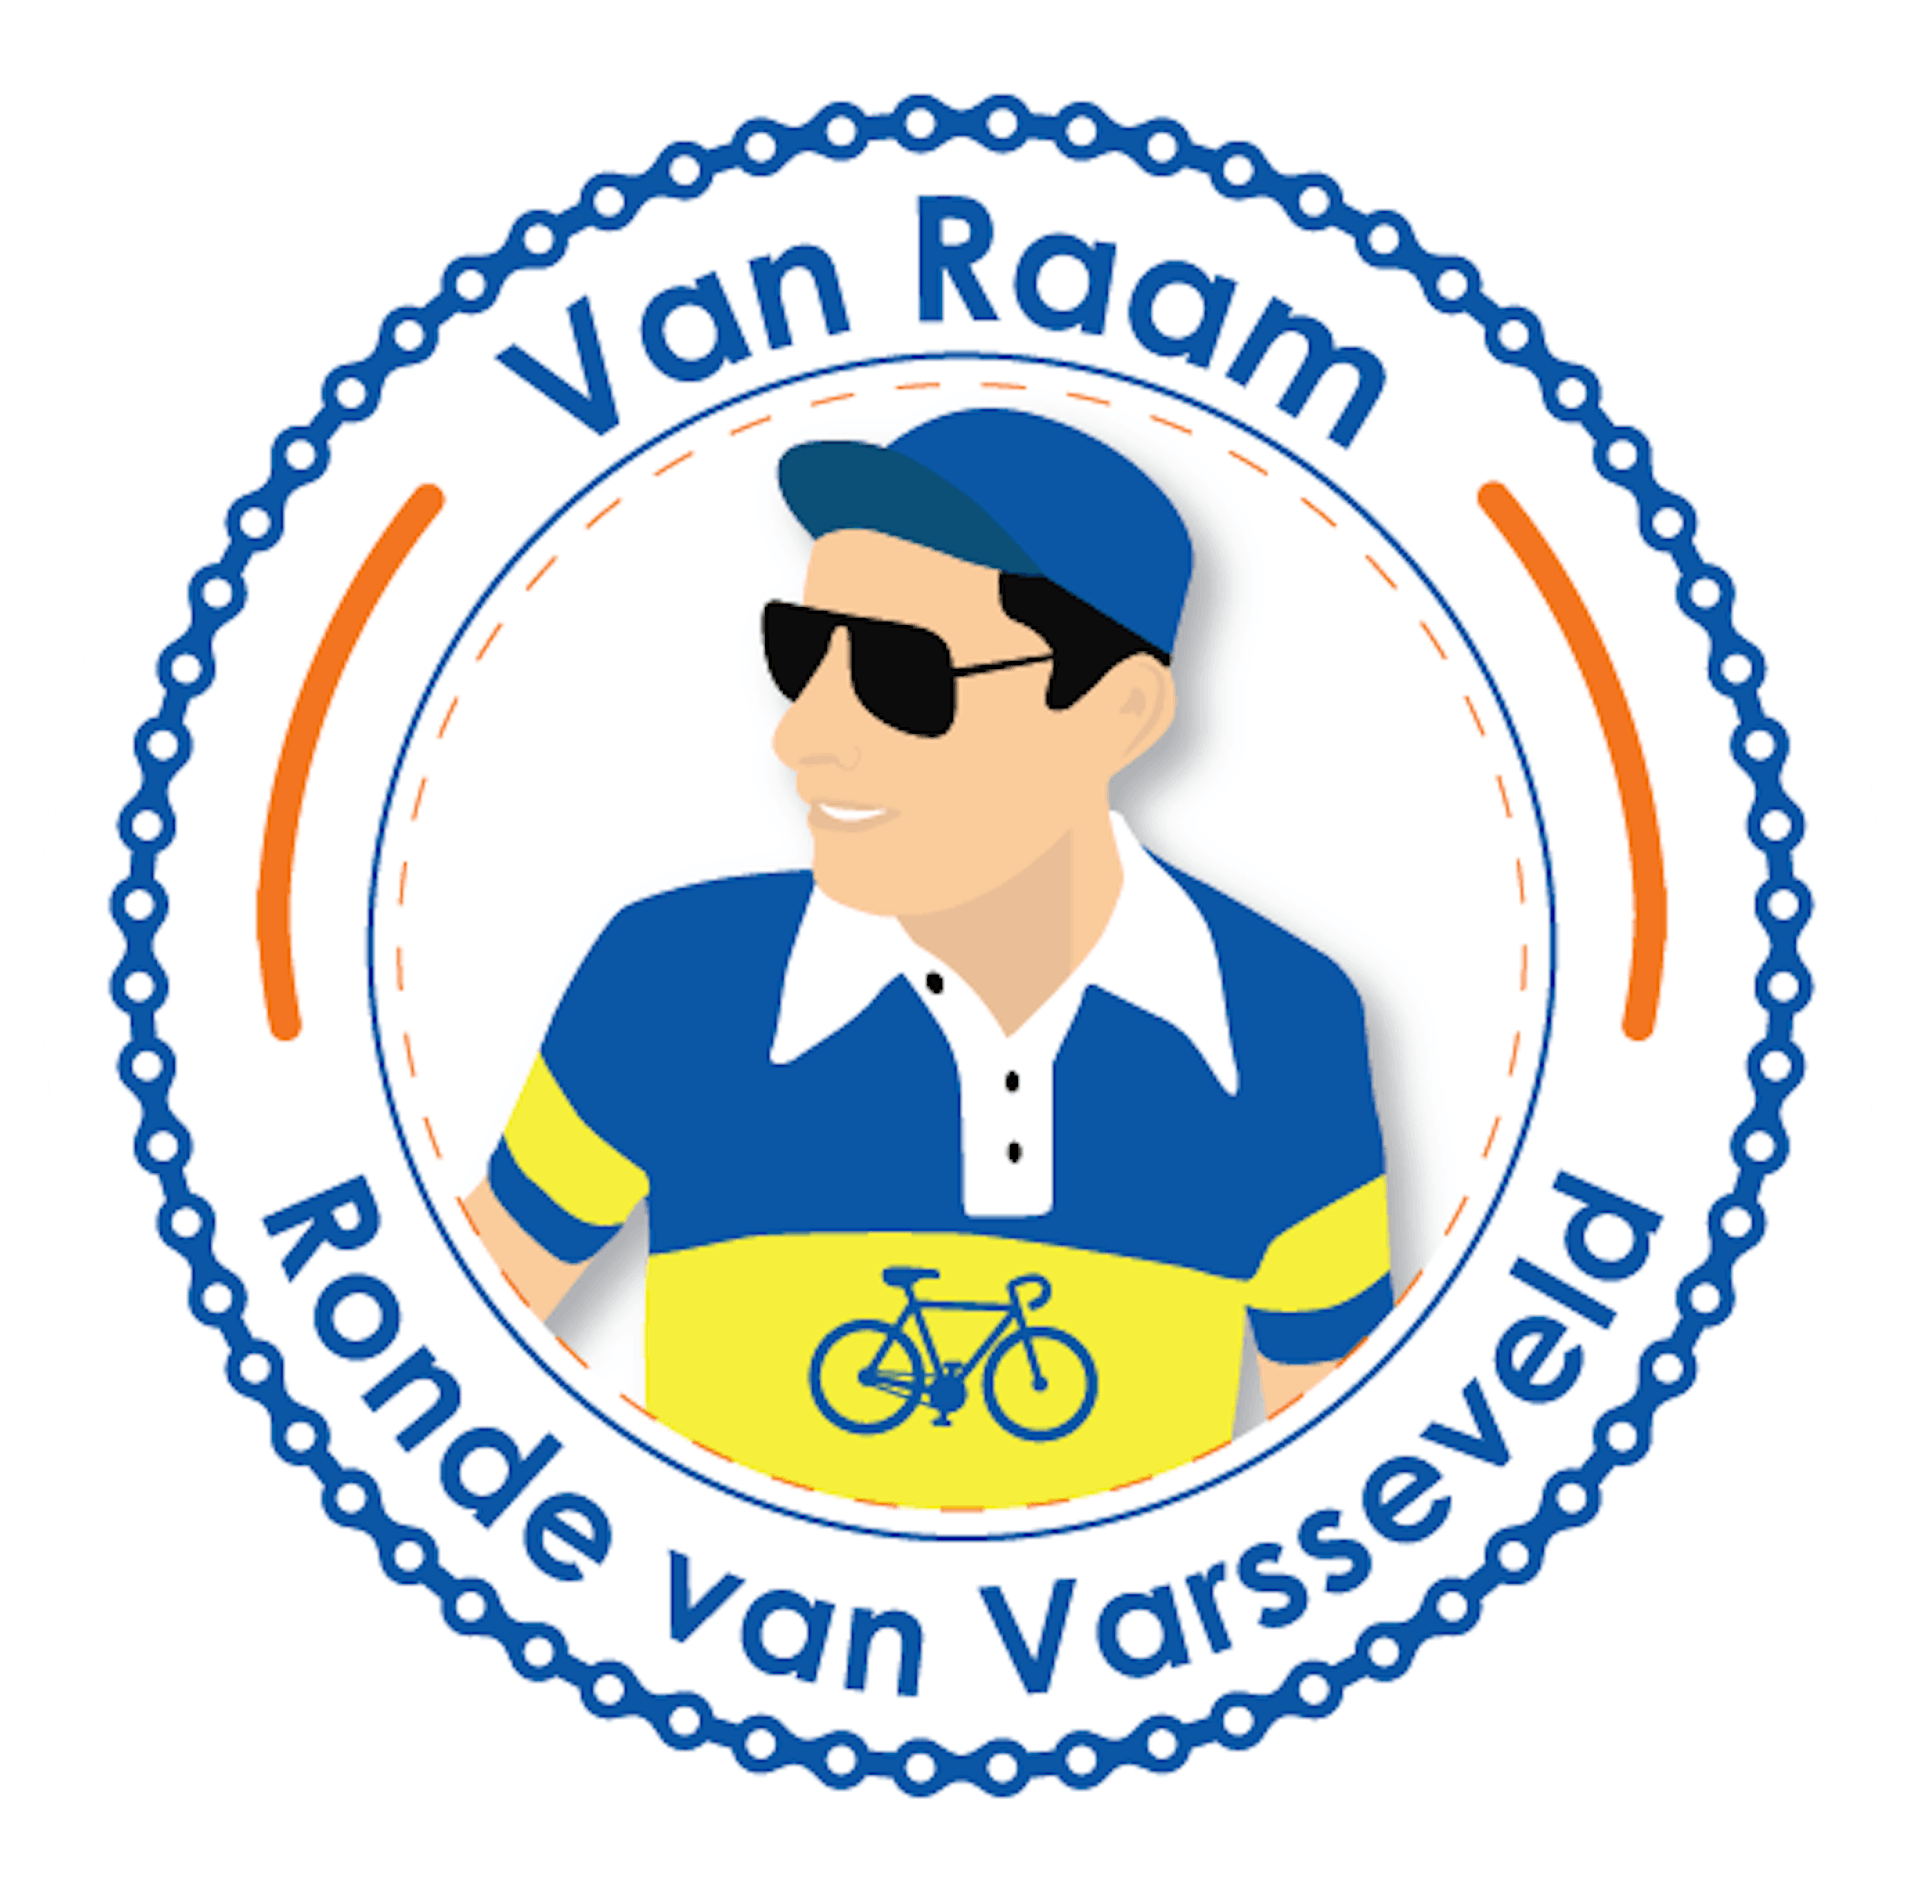 Ronde van Varsseveld 2018